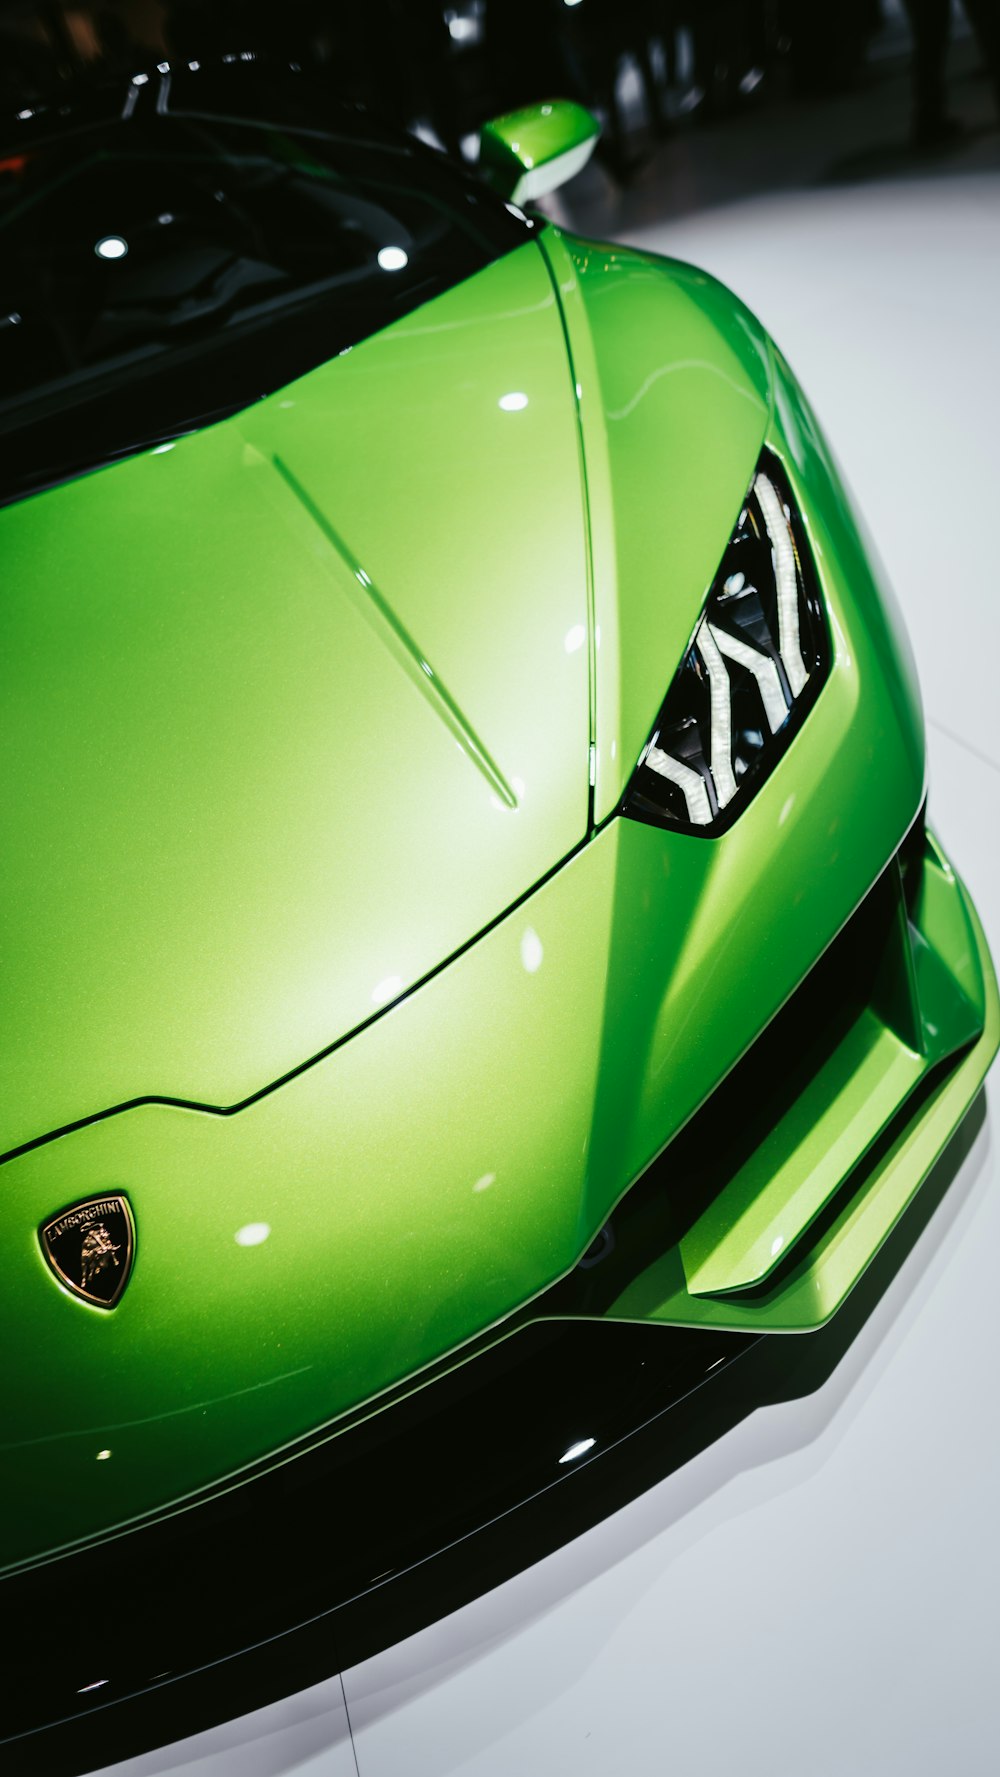 Ein grüner Sportwagen